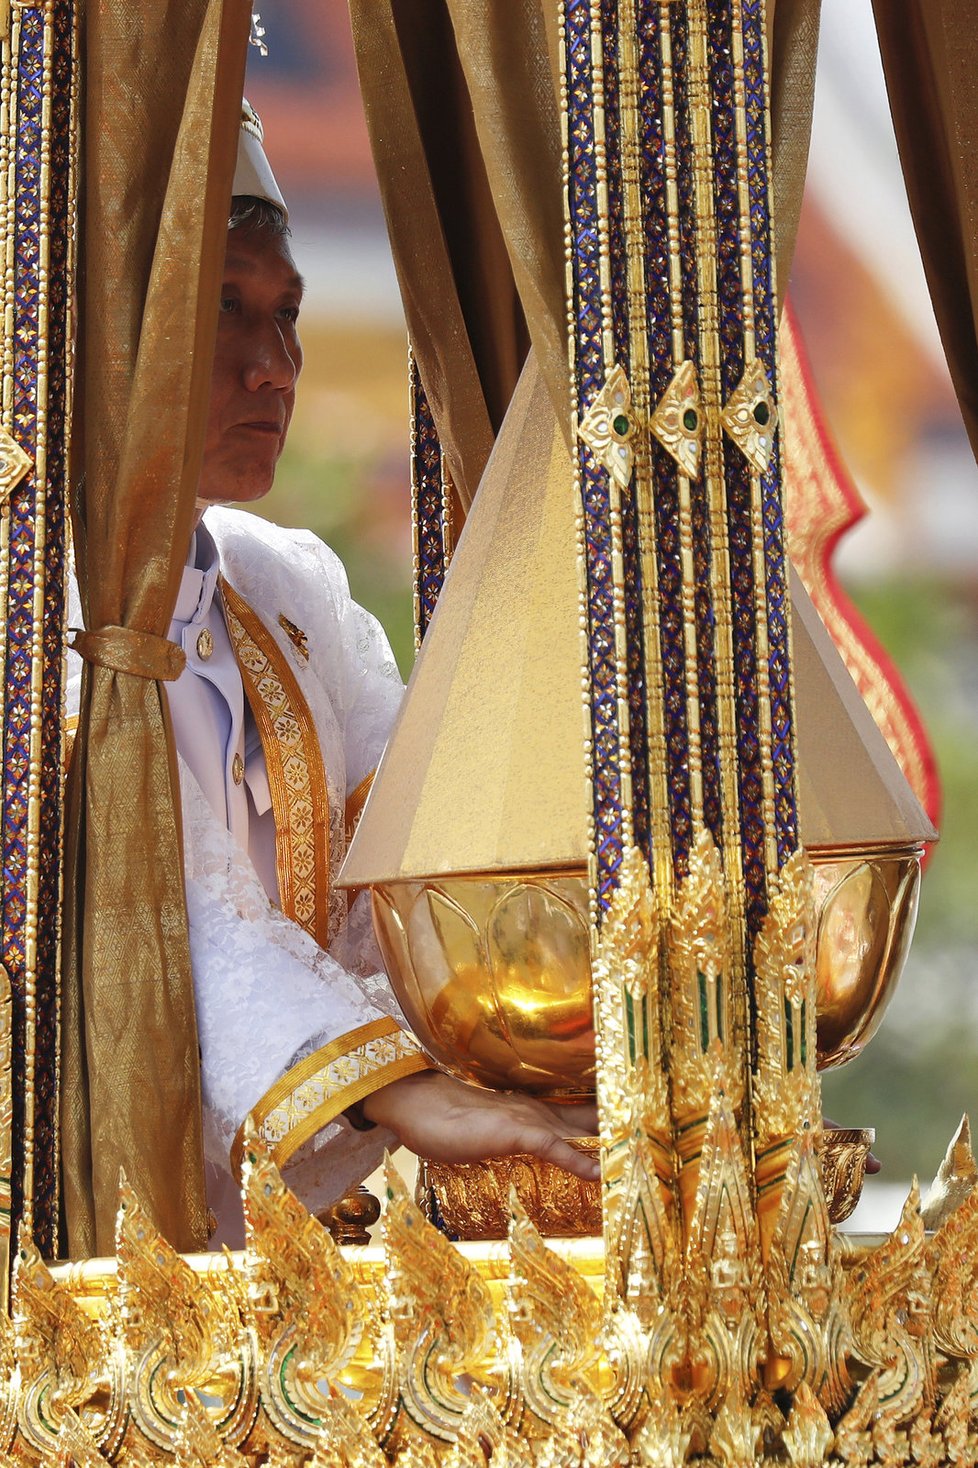 Říjen 2017: Bangkok truchlil nad ztrátou krále Pchúmipchona Adundéta.